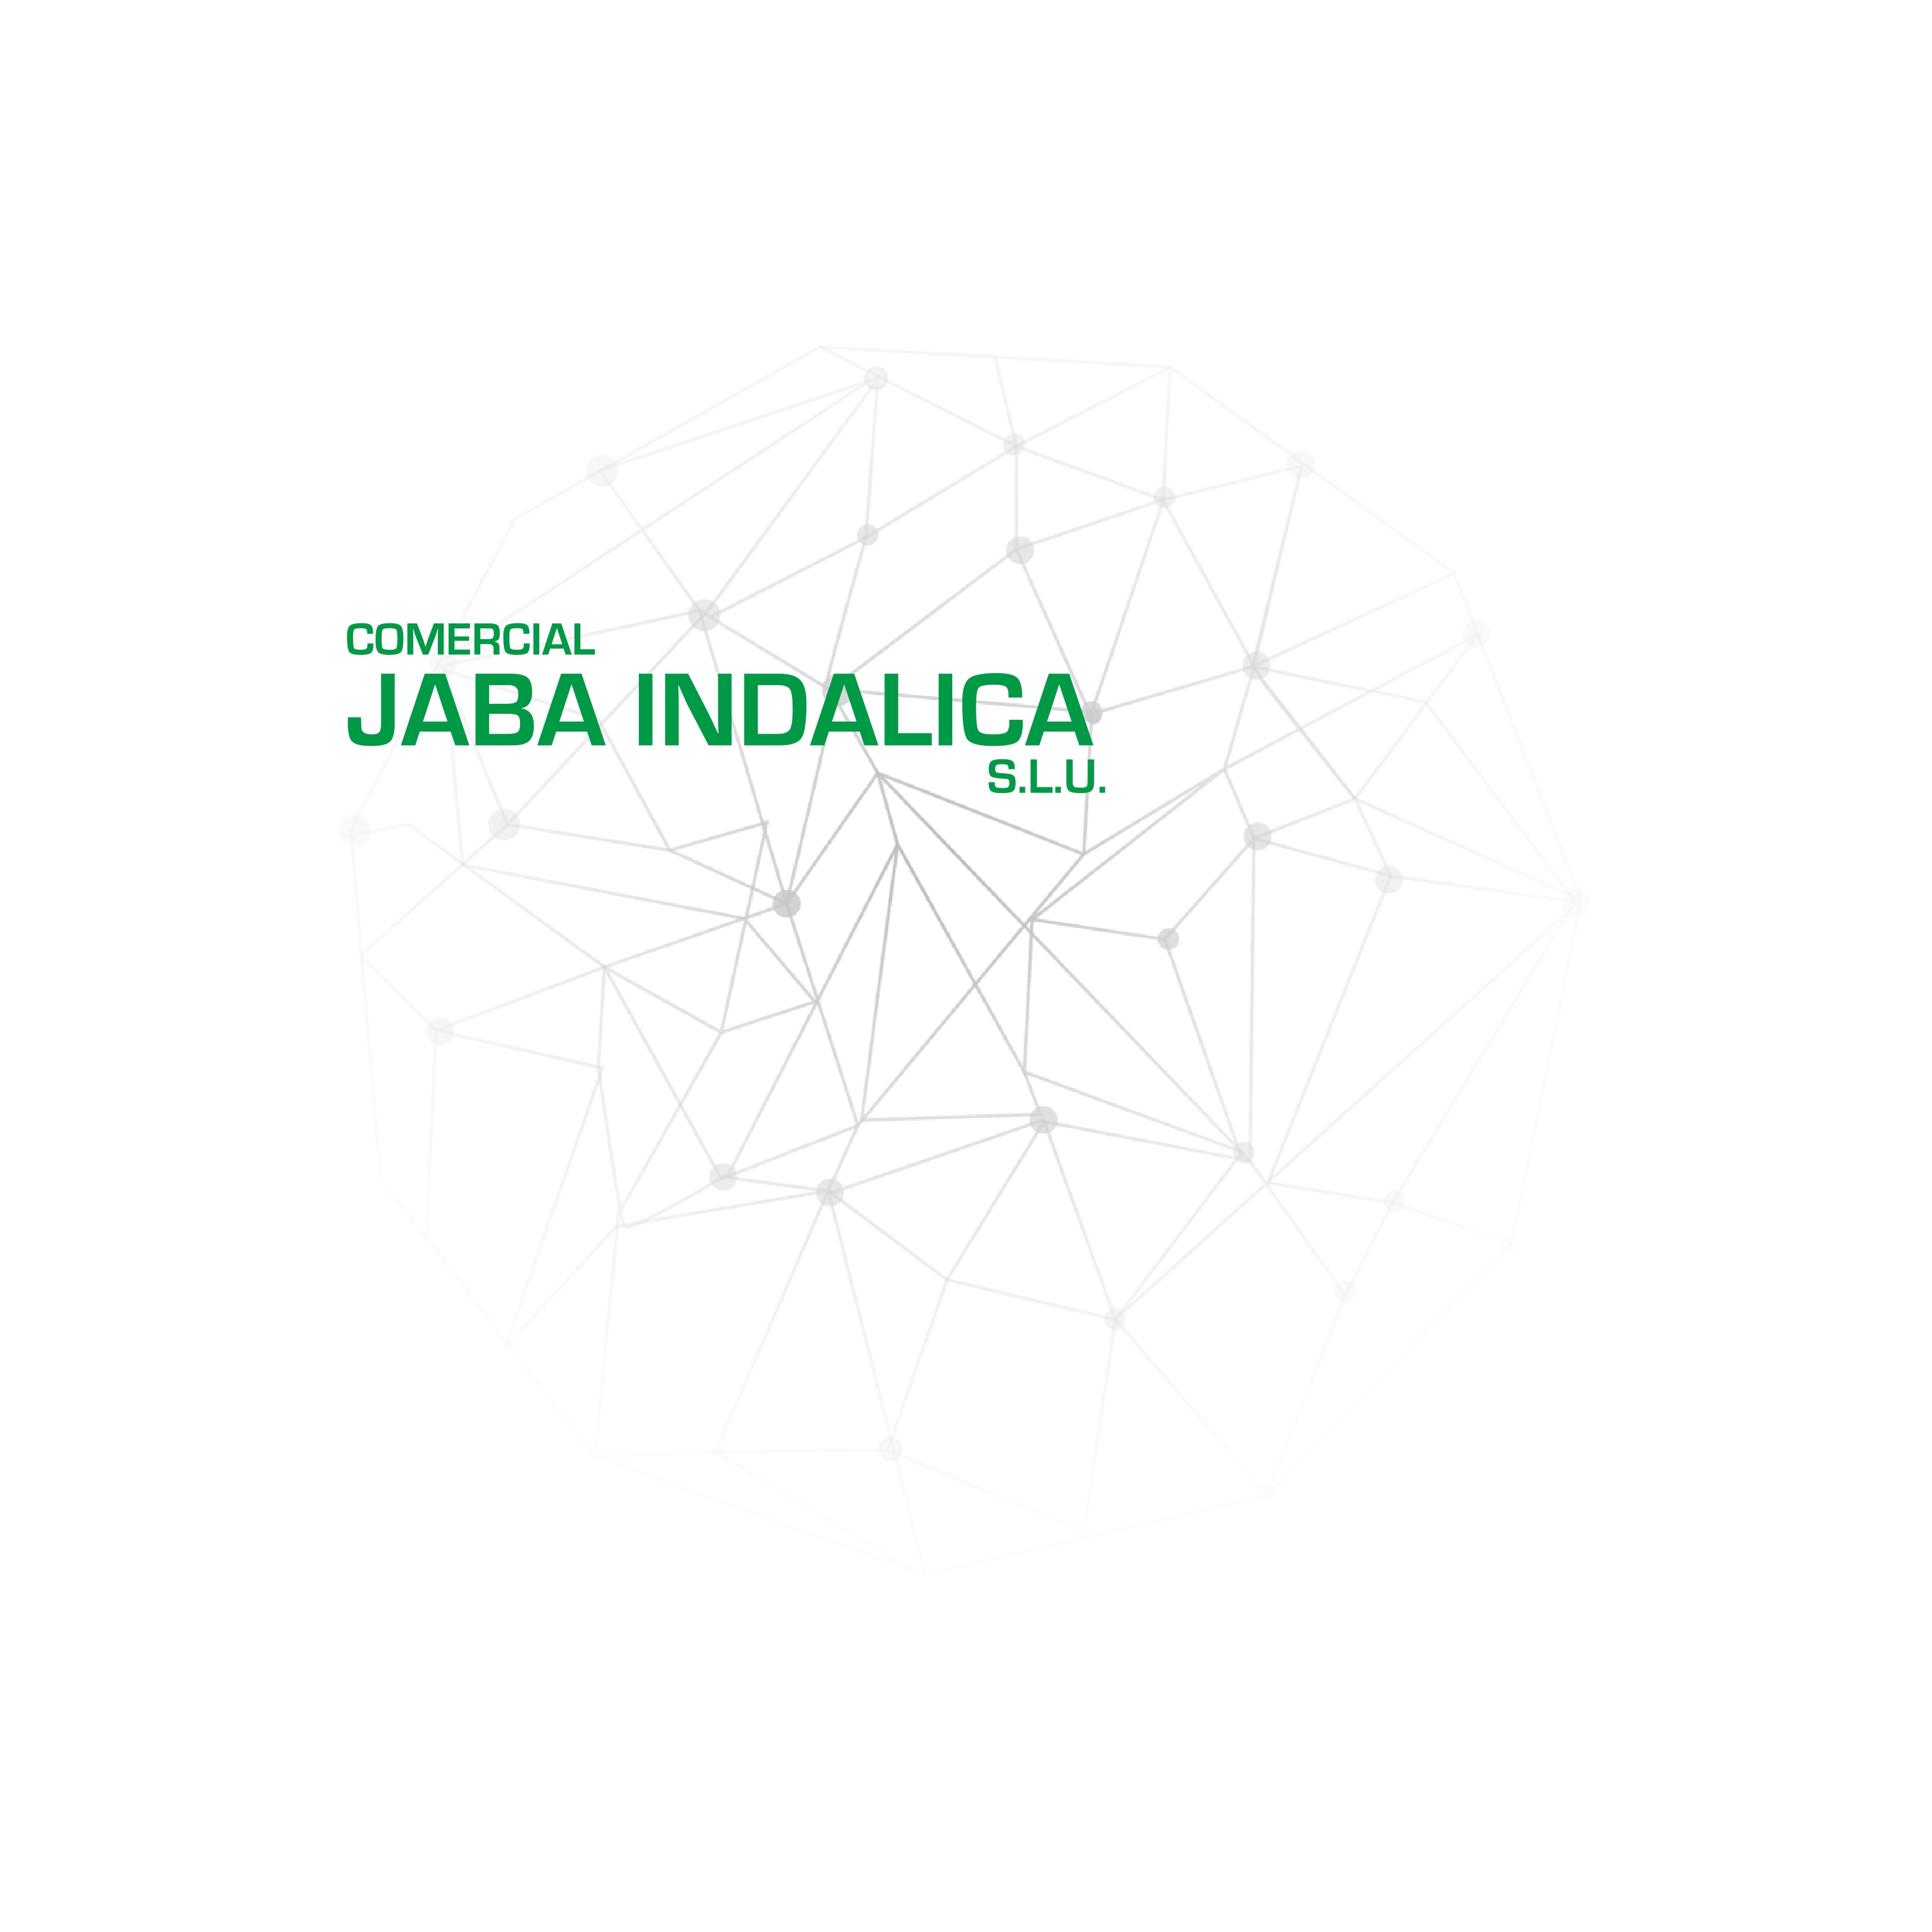 Comercial Jaba Logo